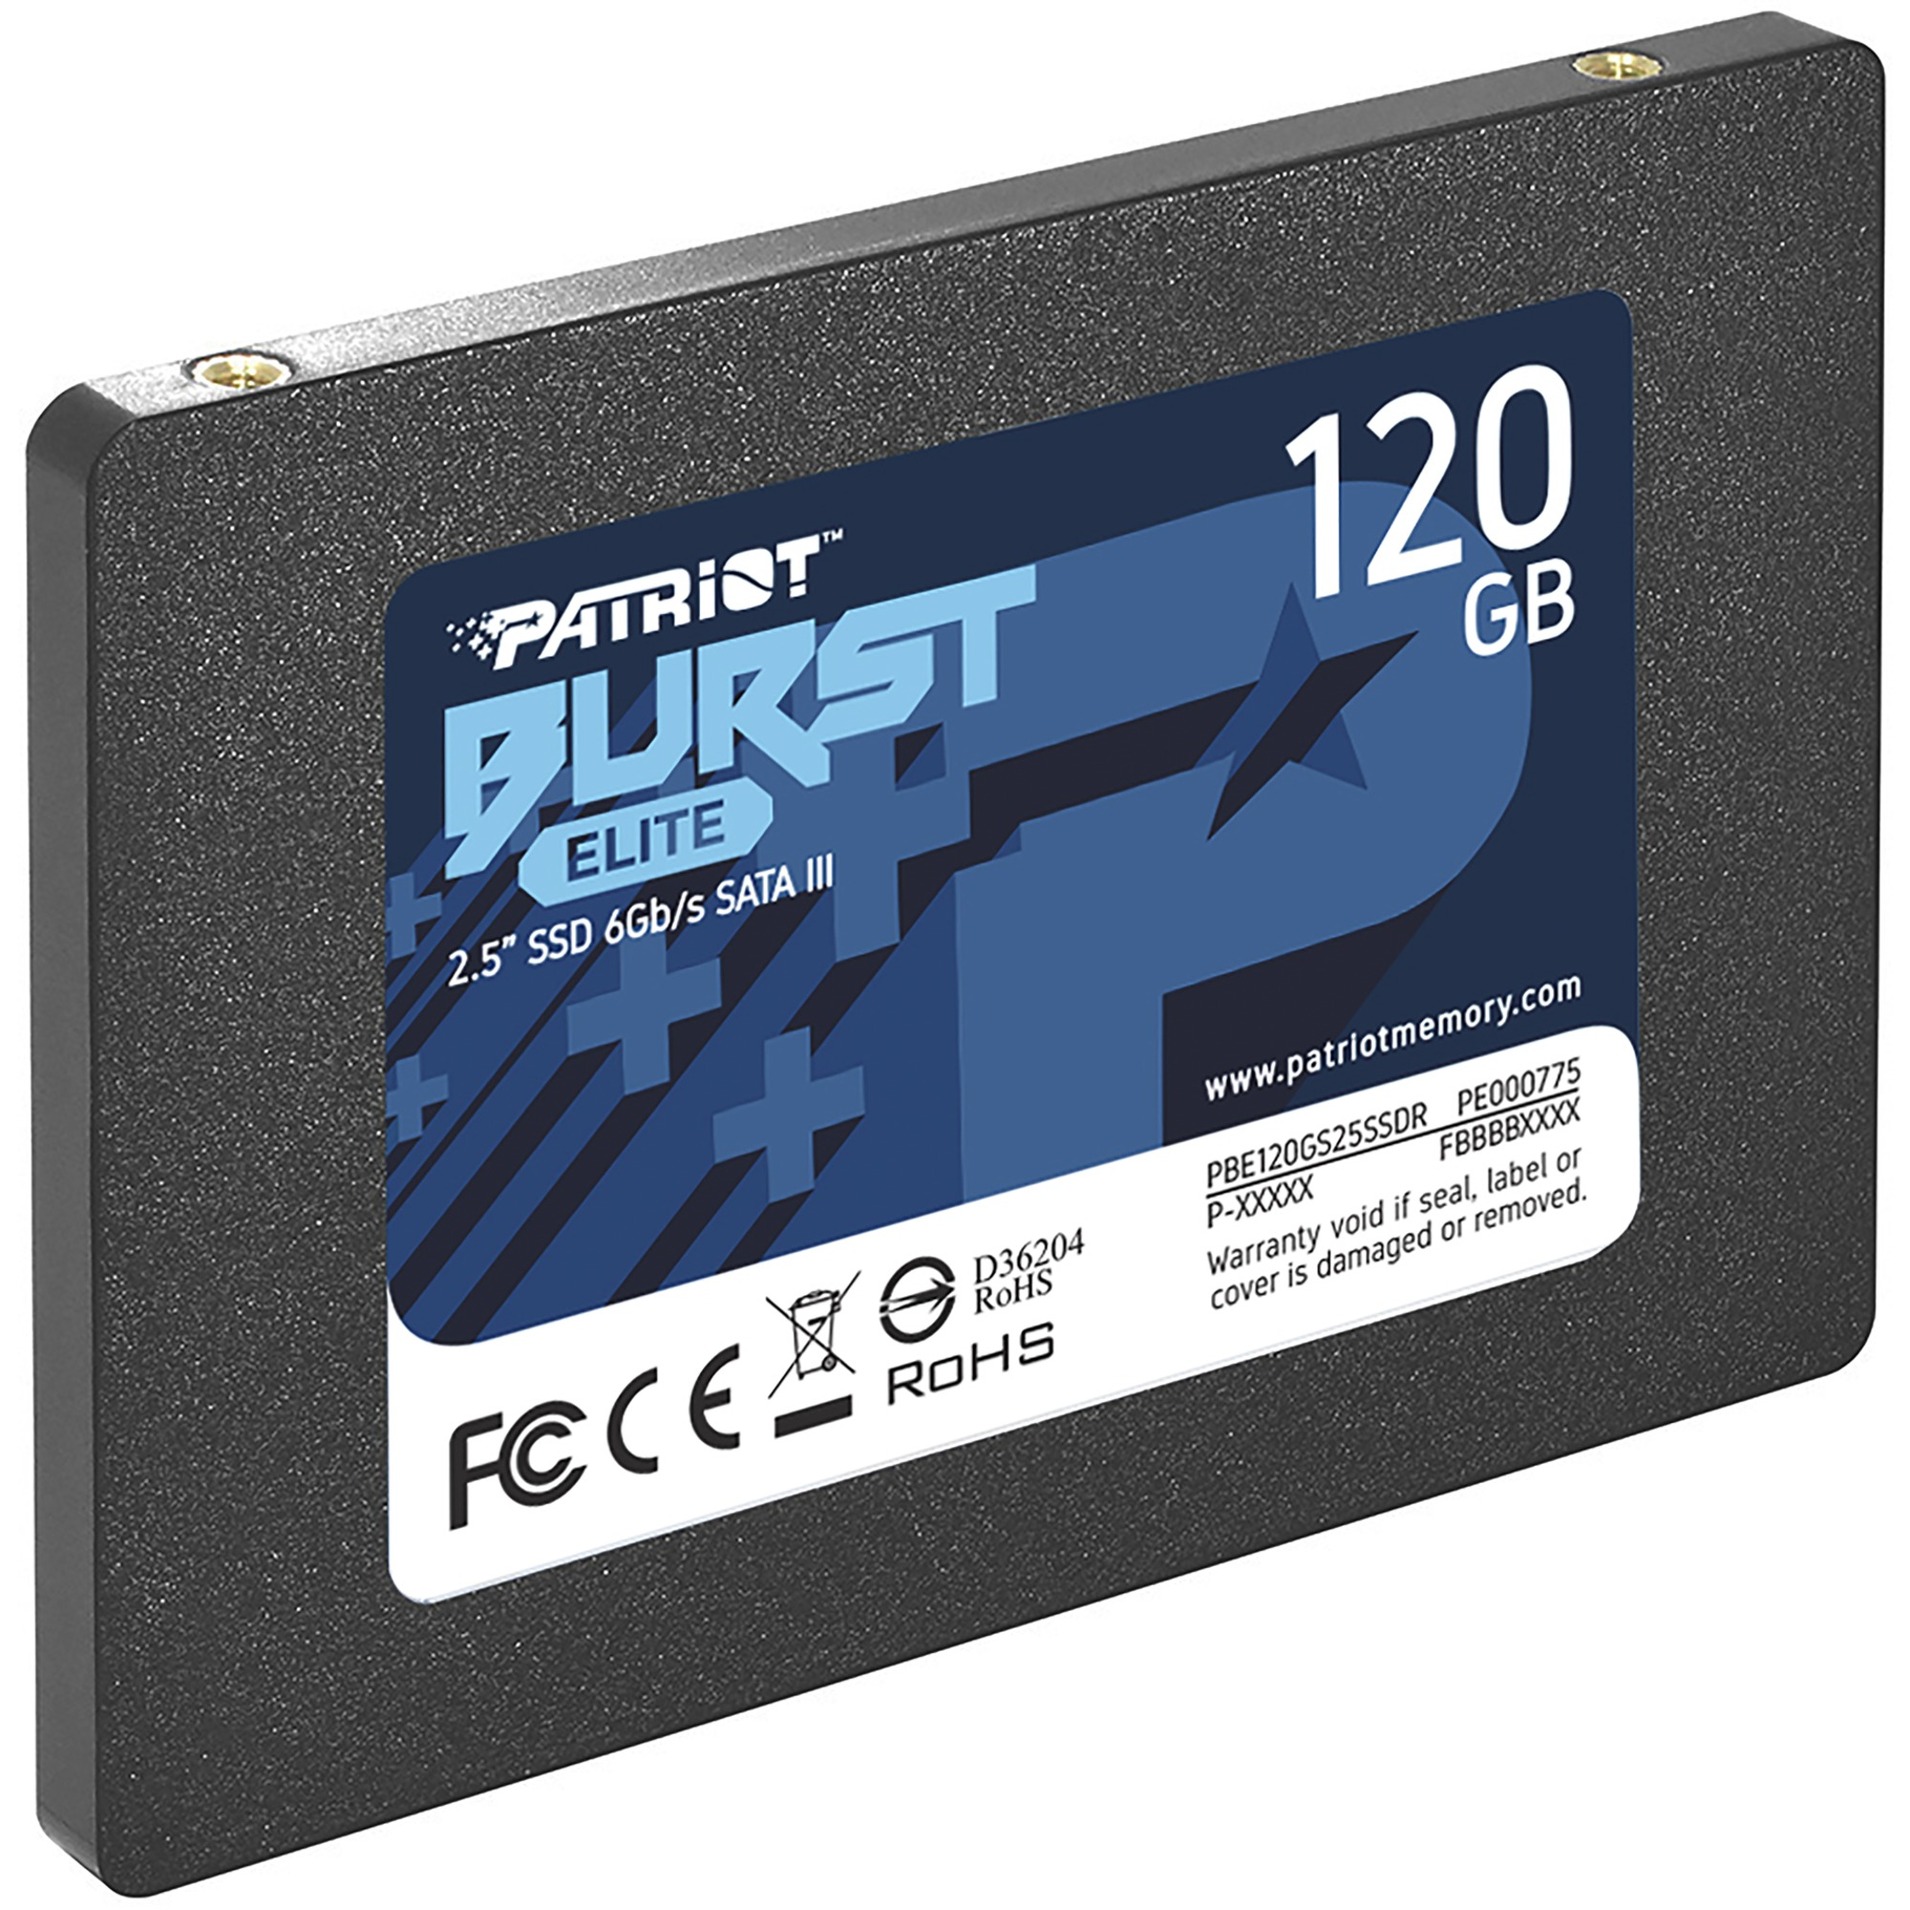 Image of Alternate - Burst Elite 120 GB, SSD online einkaufen bei Alternate